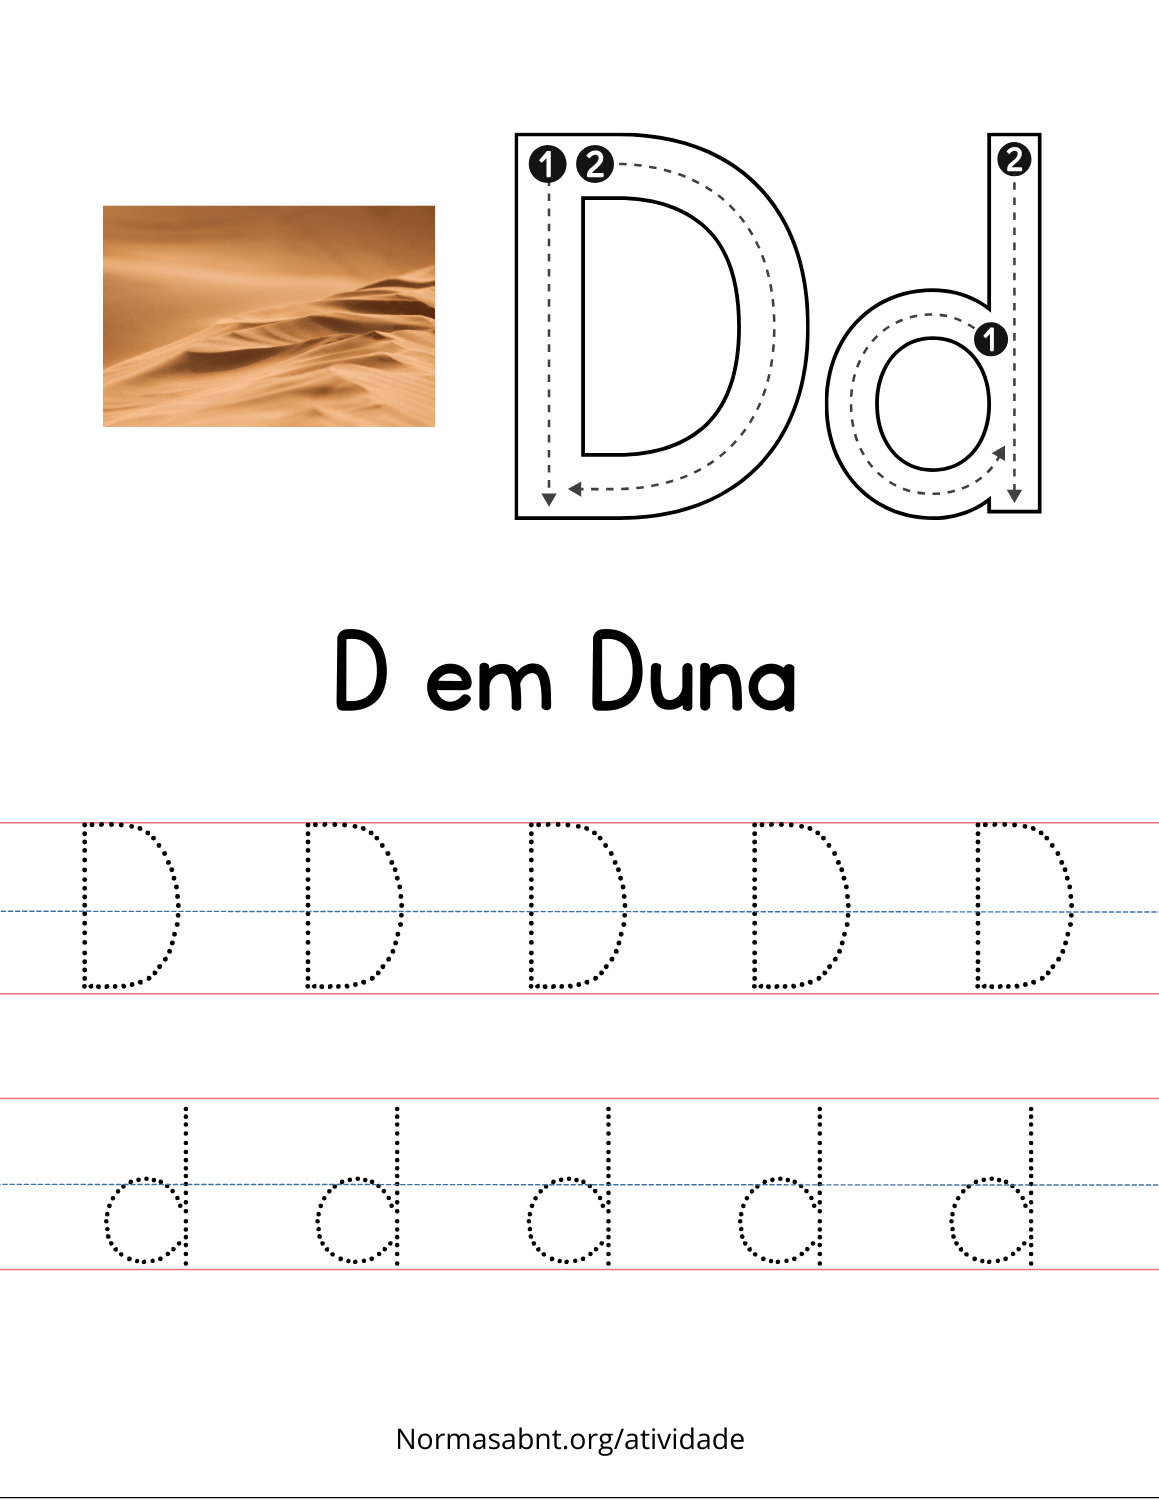 D em duna, escrever D